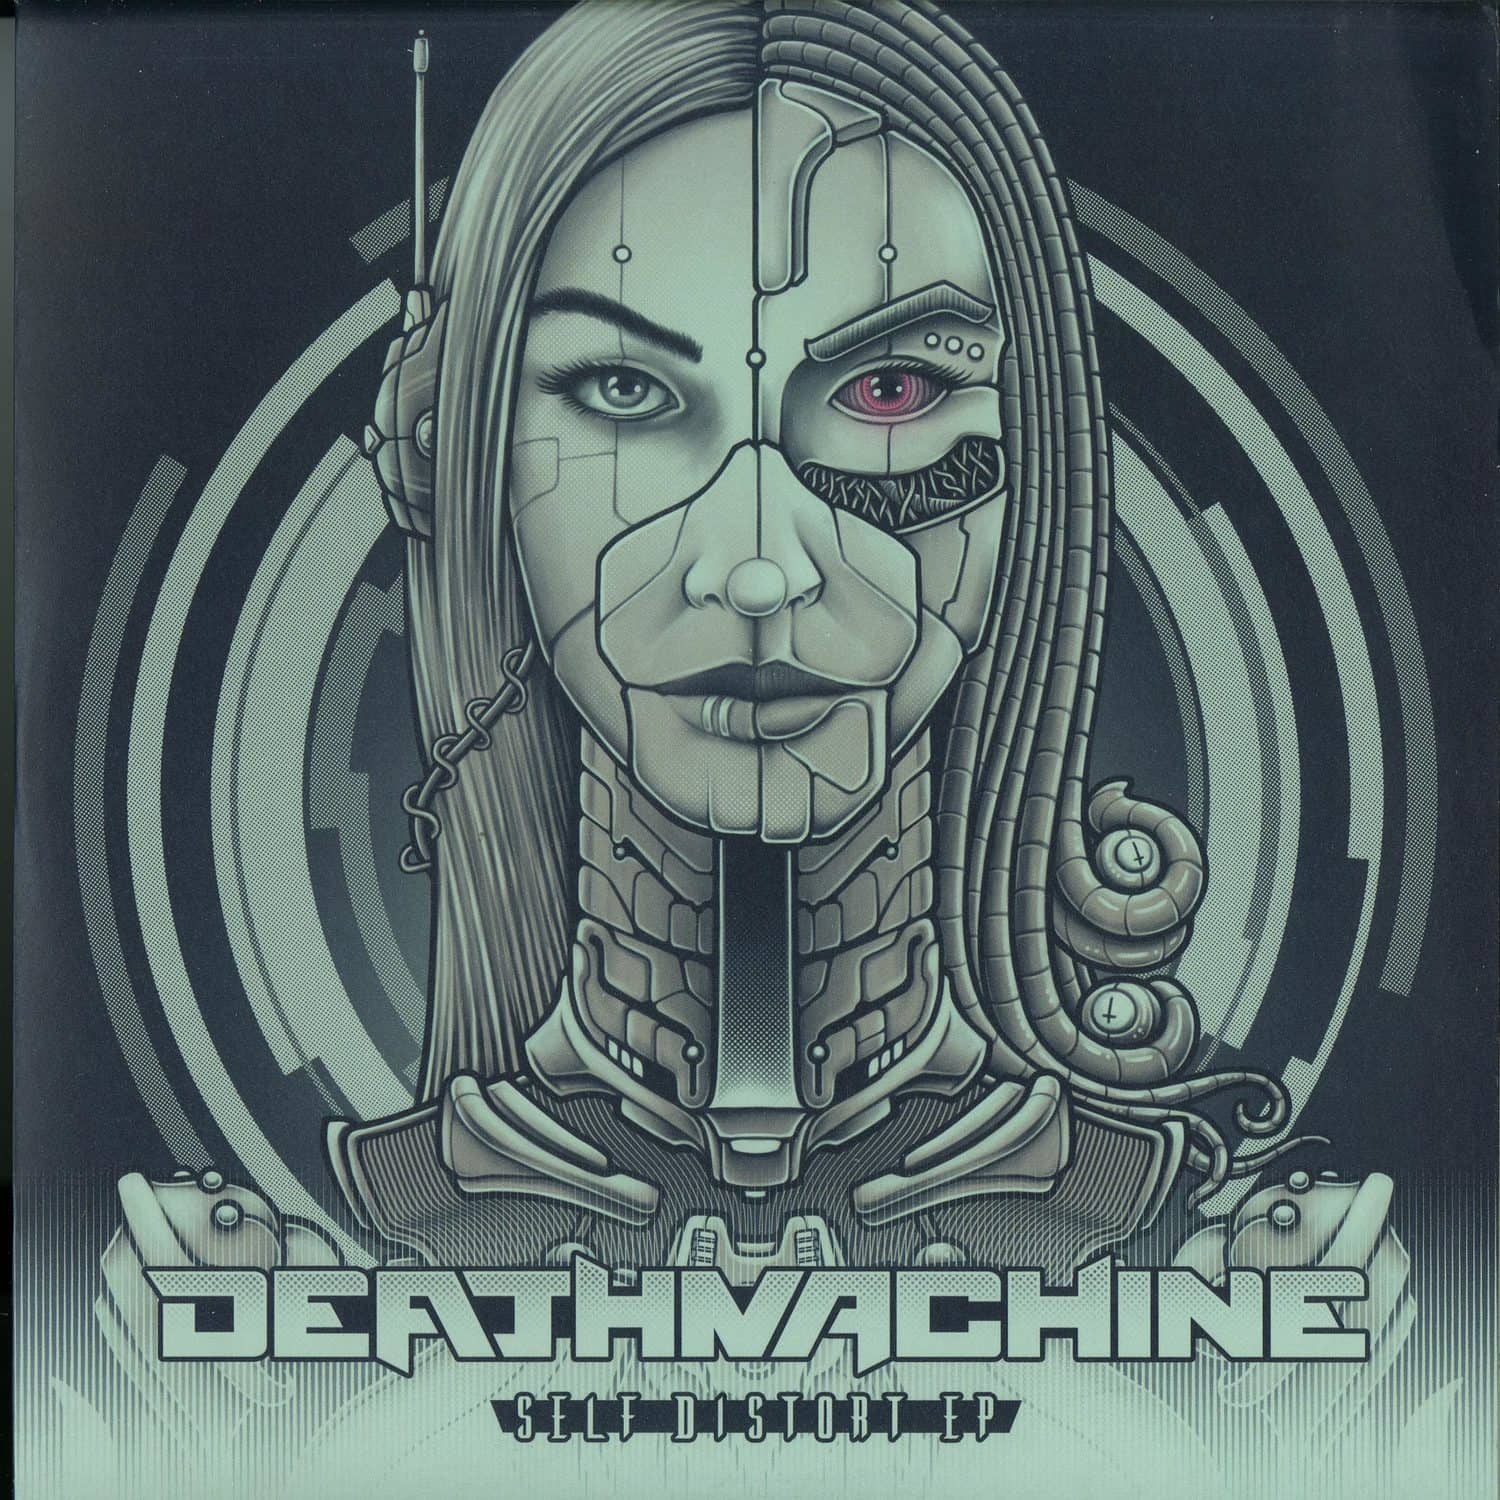 Deathmachine, The Hard Way - SELF DISTORT EP